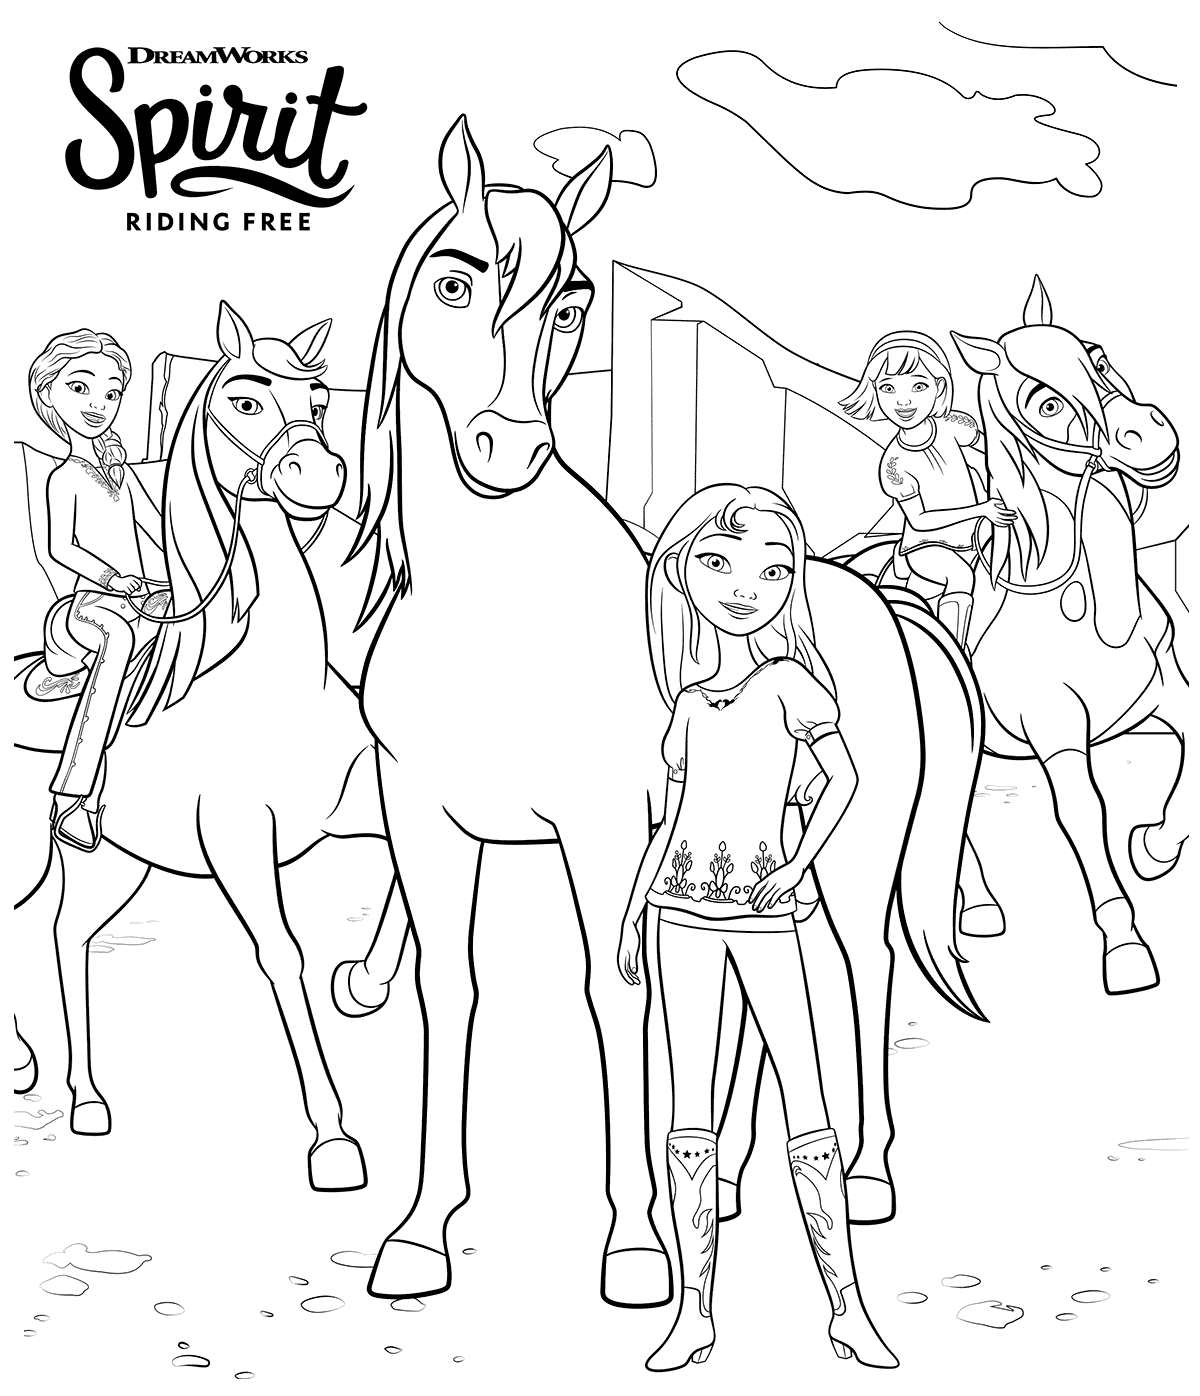 Spirit Riding Free op Netflix van Spirit Riding Free